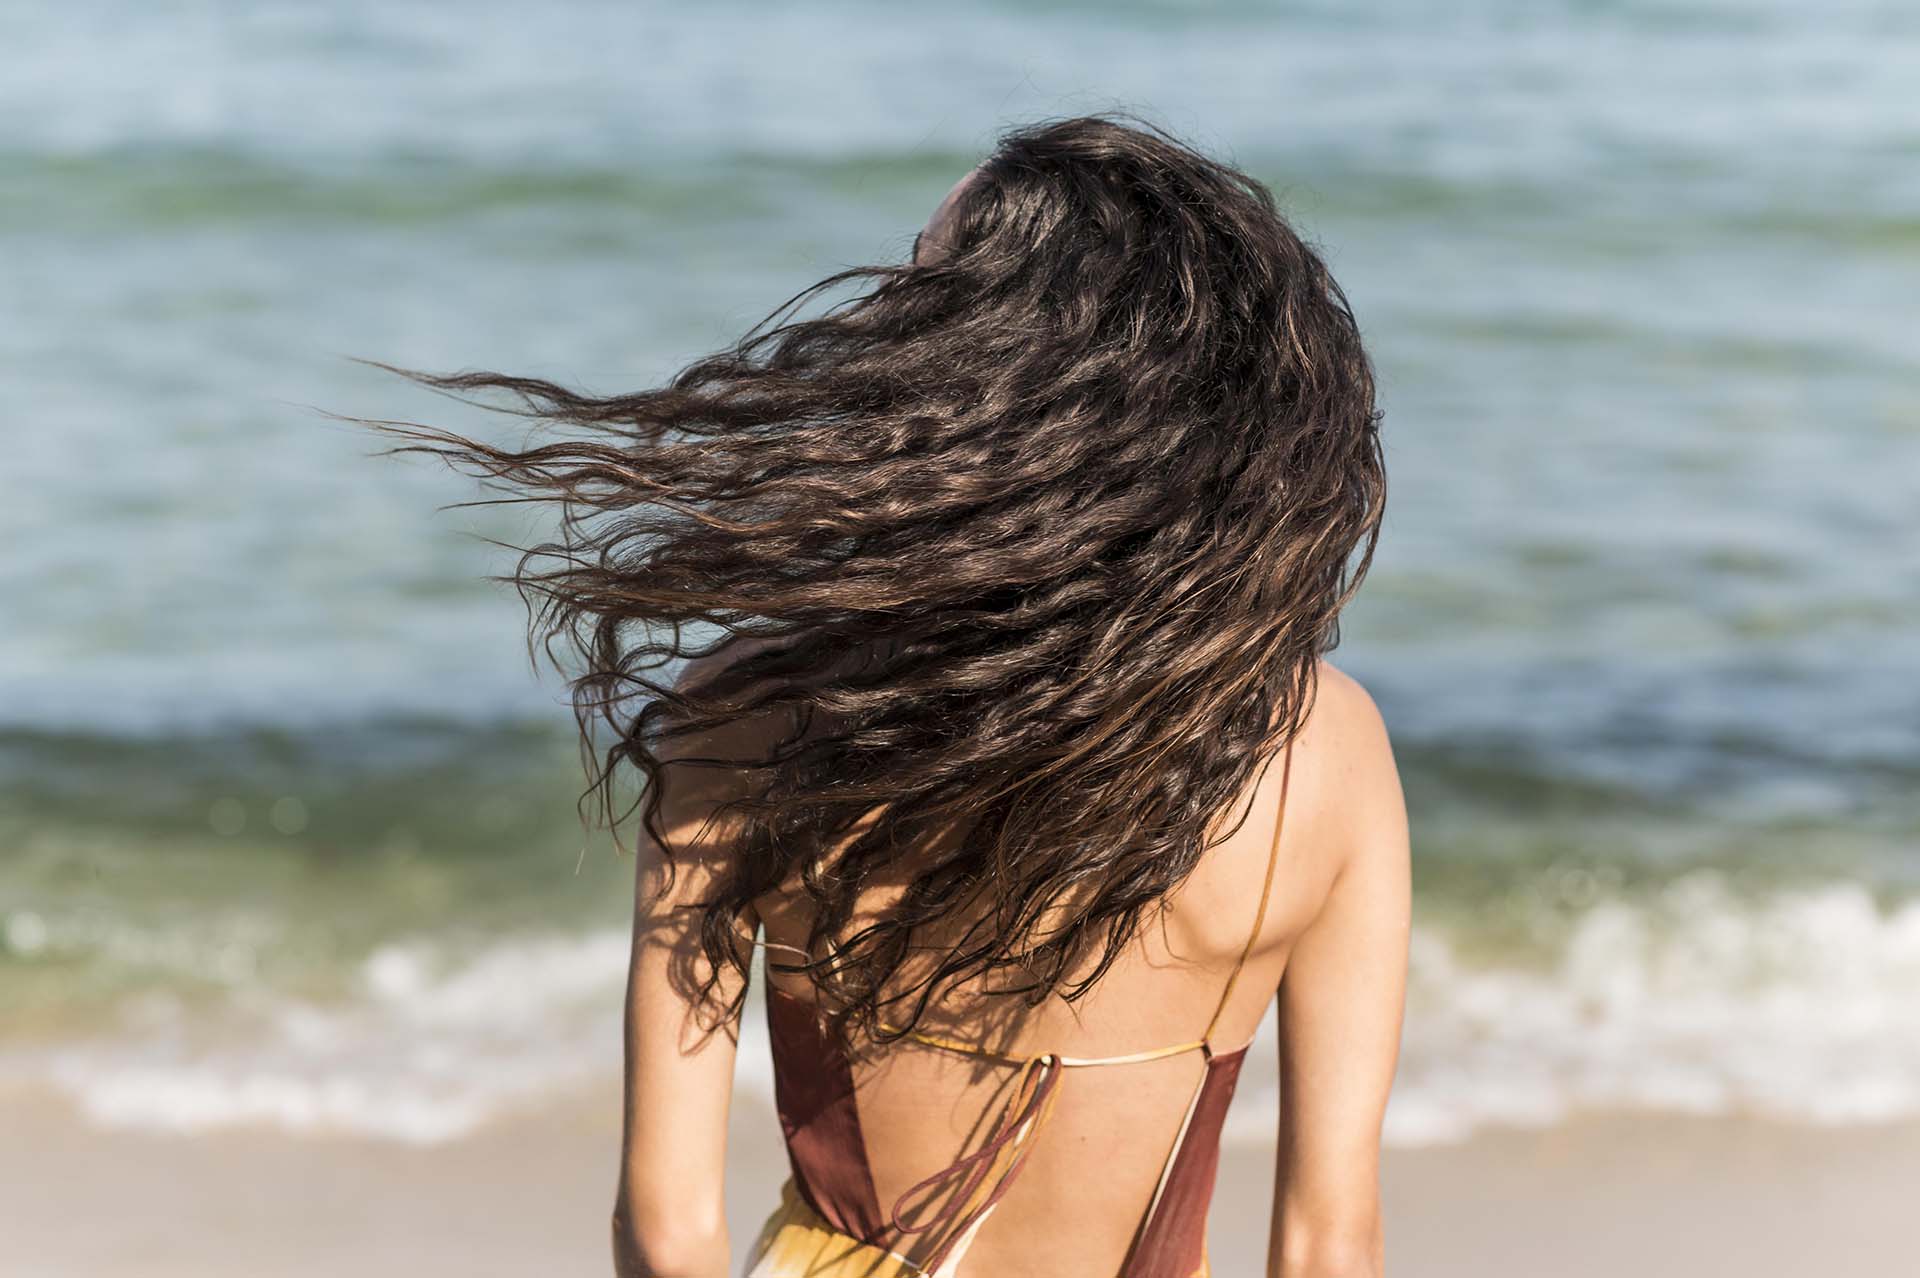 L'estate è il momento ideale per godersi il sole ma è anche importante proteggere i capelli dai danni.